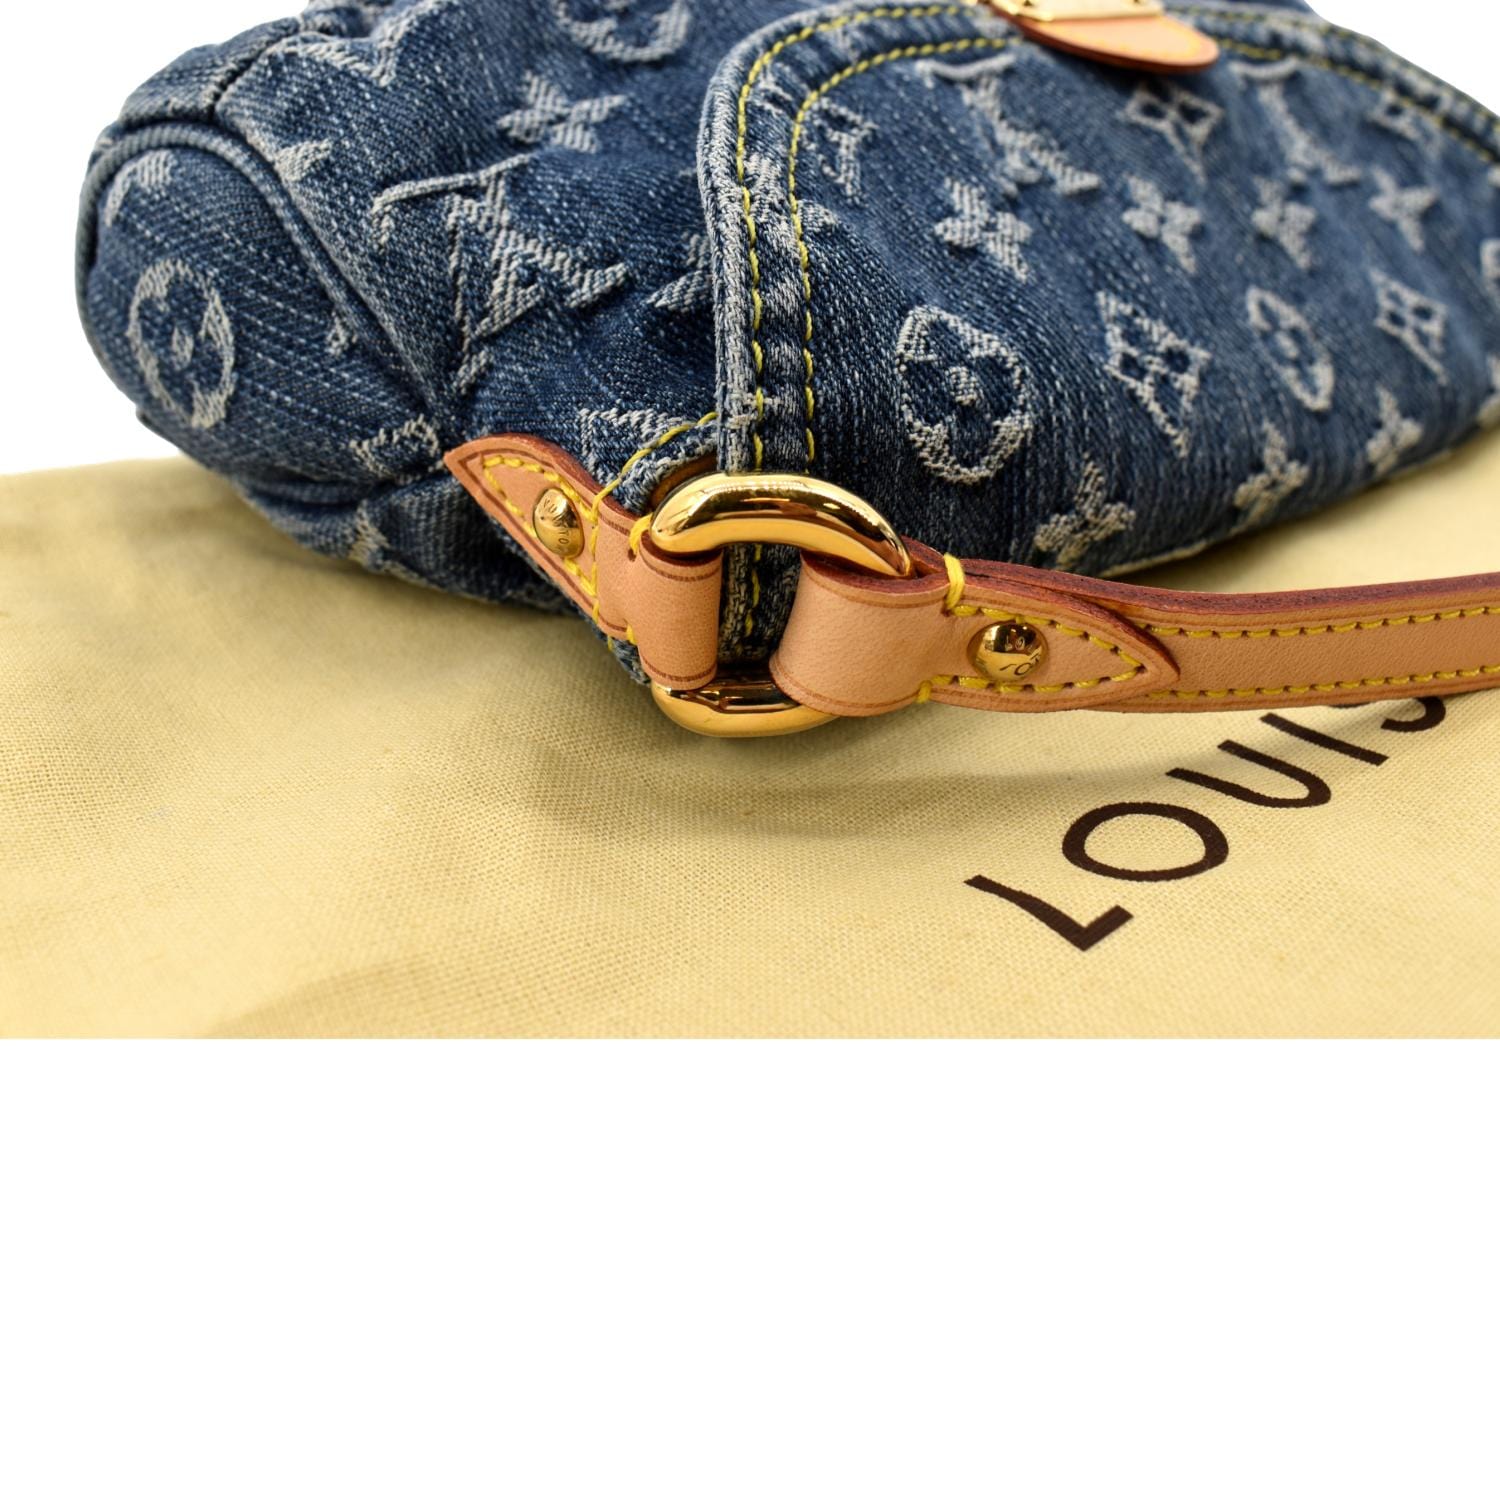 Vintage Louis Vuitton Pleaty Blue Monogram Denim Bag 